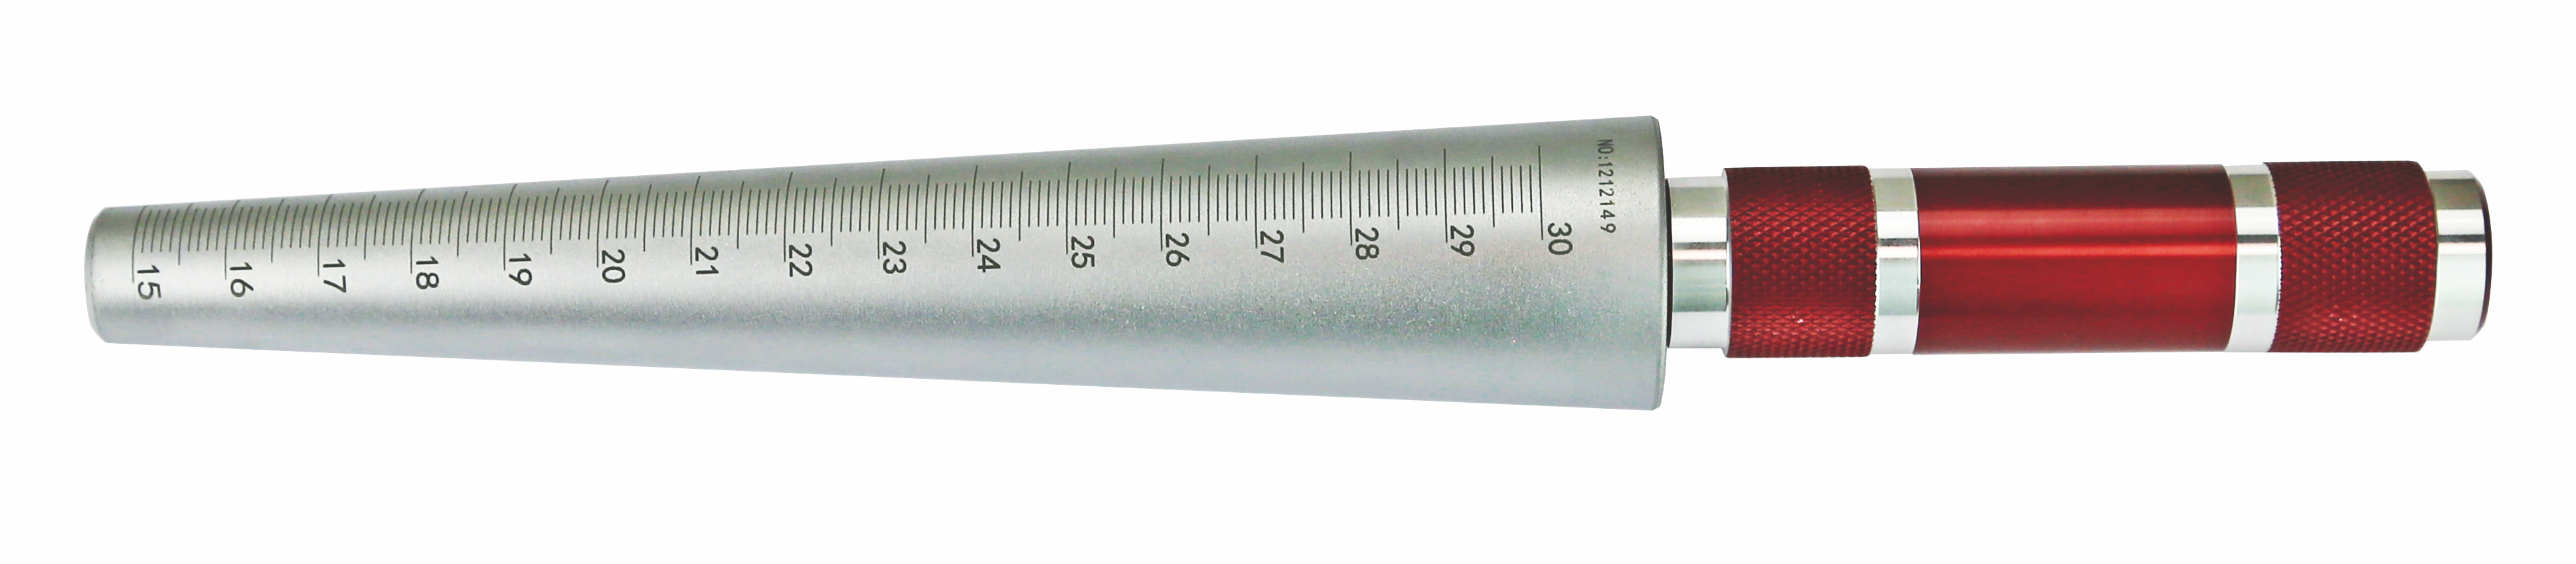 Bohrungslehre Ø 15-30 mm x 0,1 mm